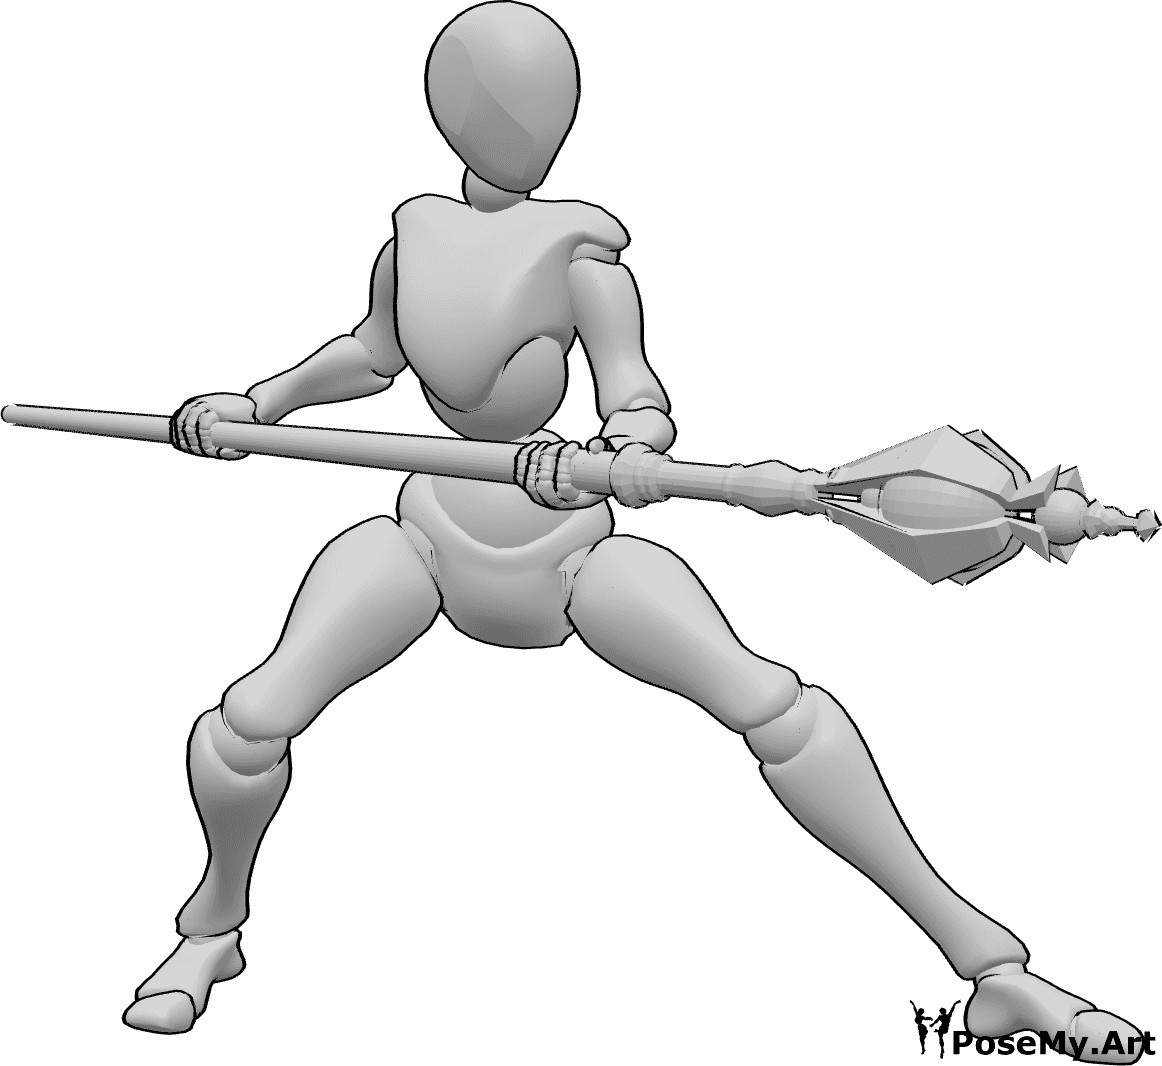 Referência de poses- Pose de ataque do bastão mágico - A mulher segura um bastão mágico com as duas mãos e está pronta para atacar